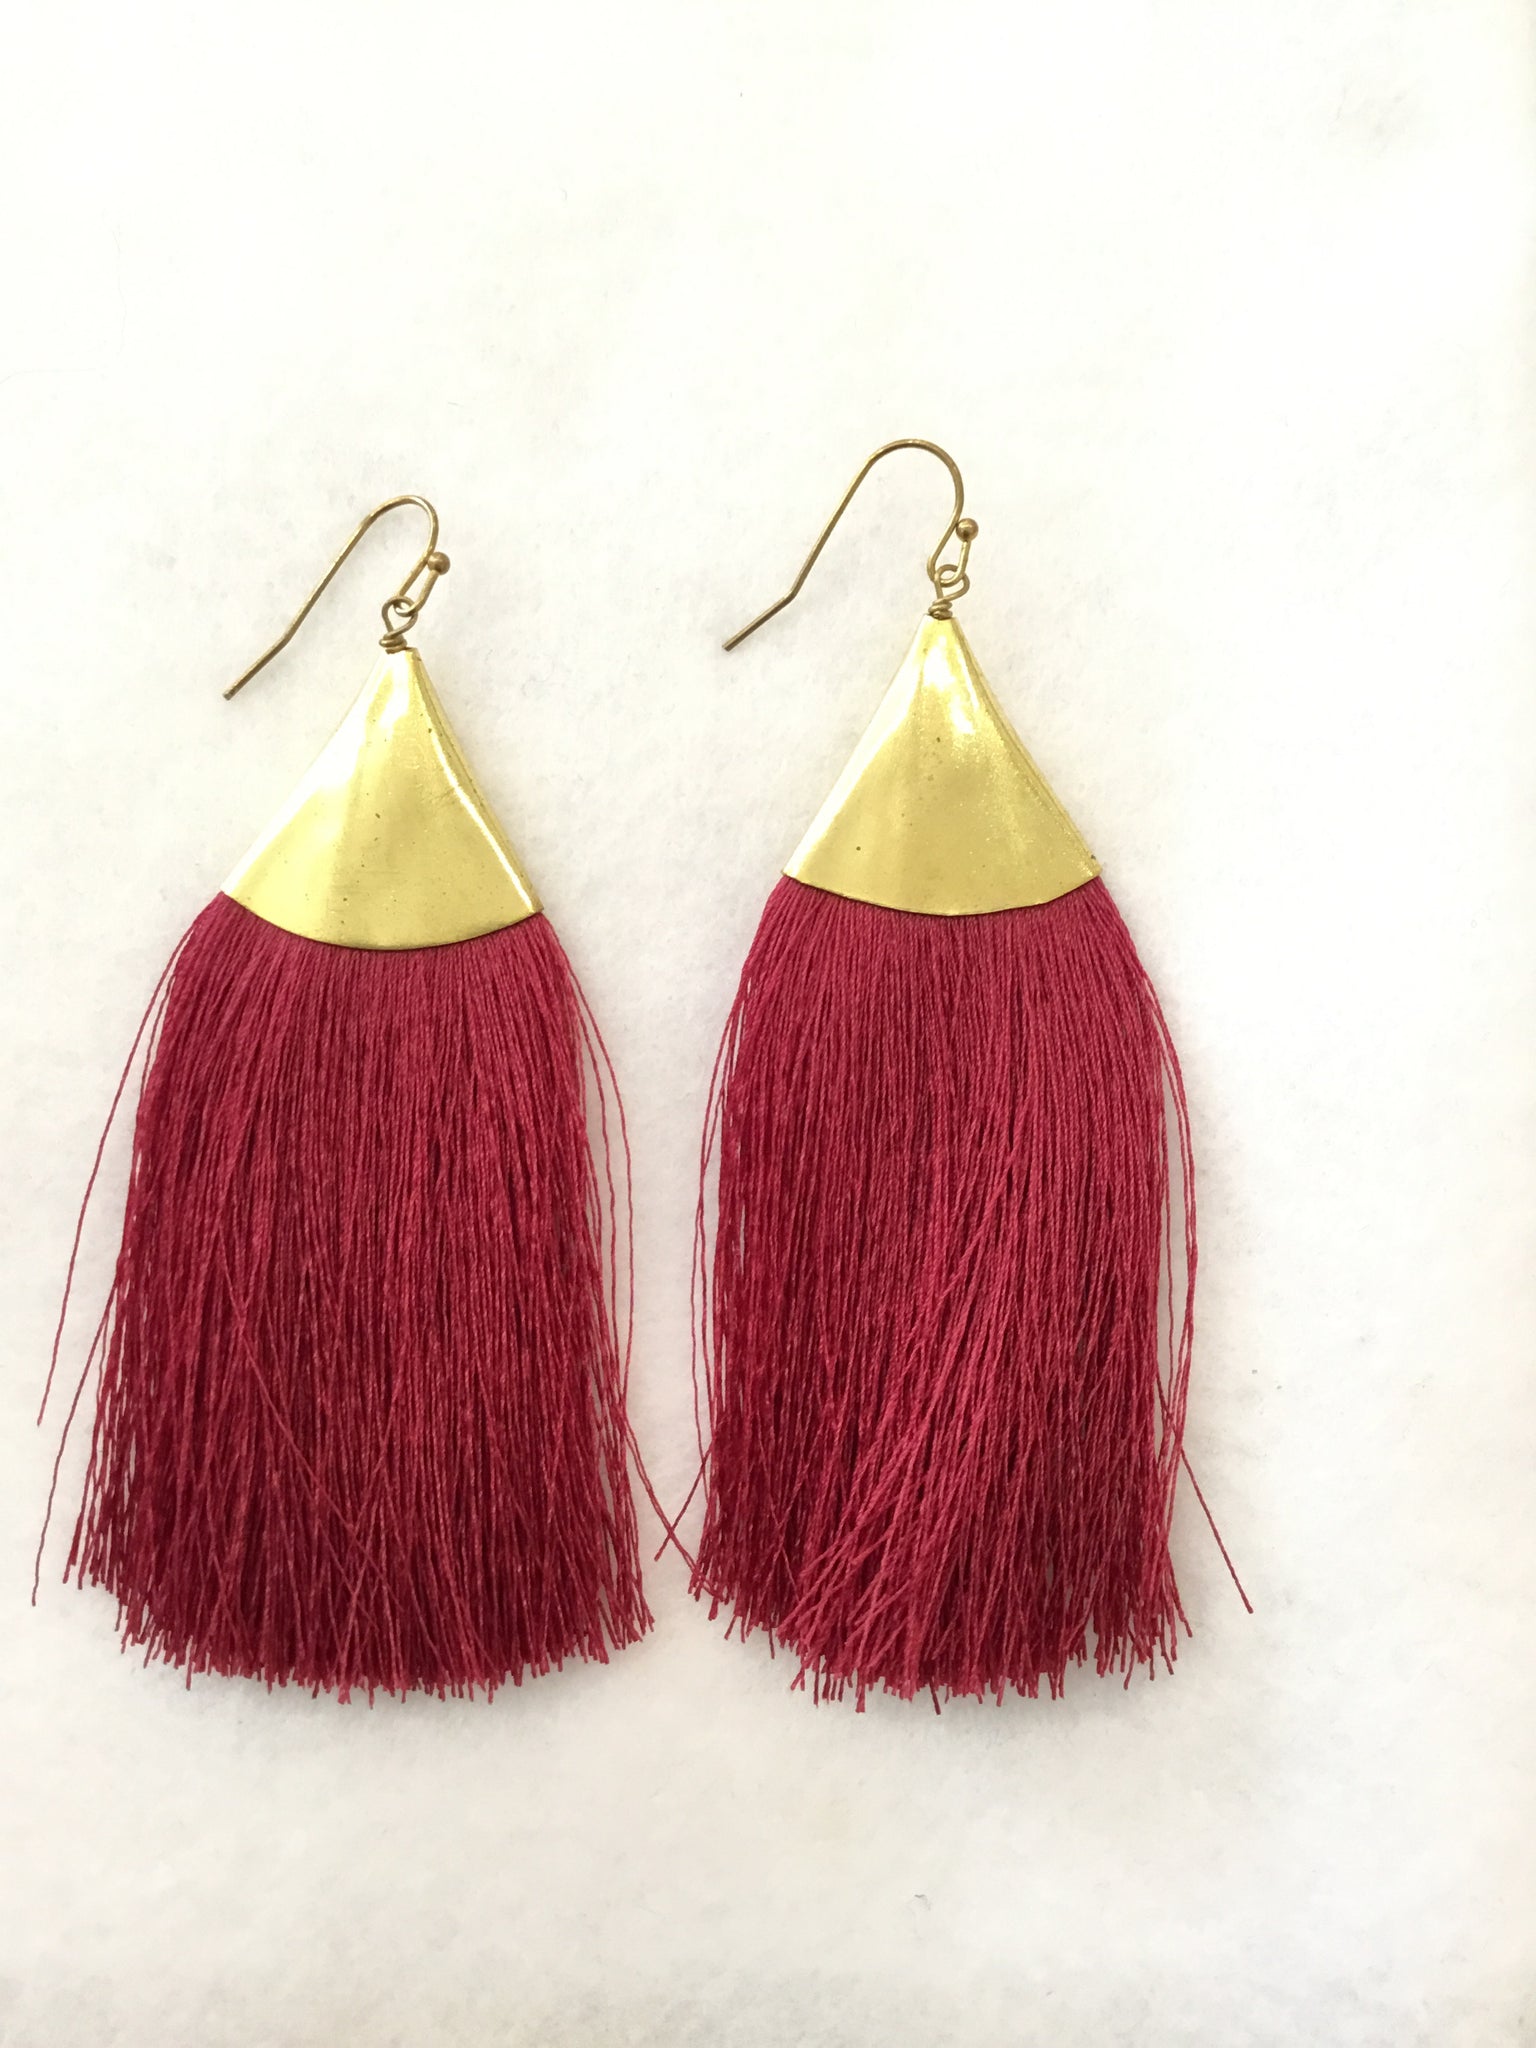 Long silk tassel earrings with brass ear wires